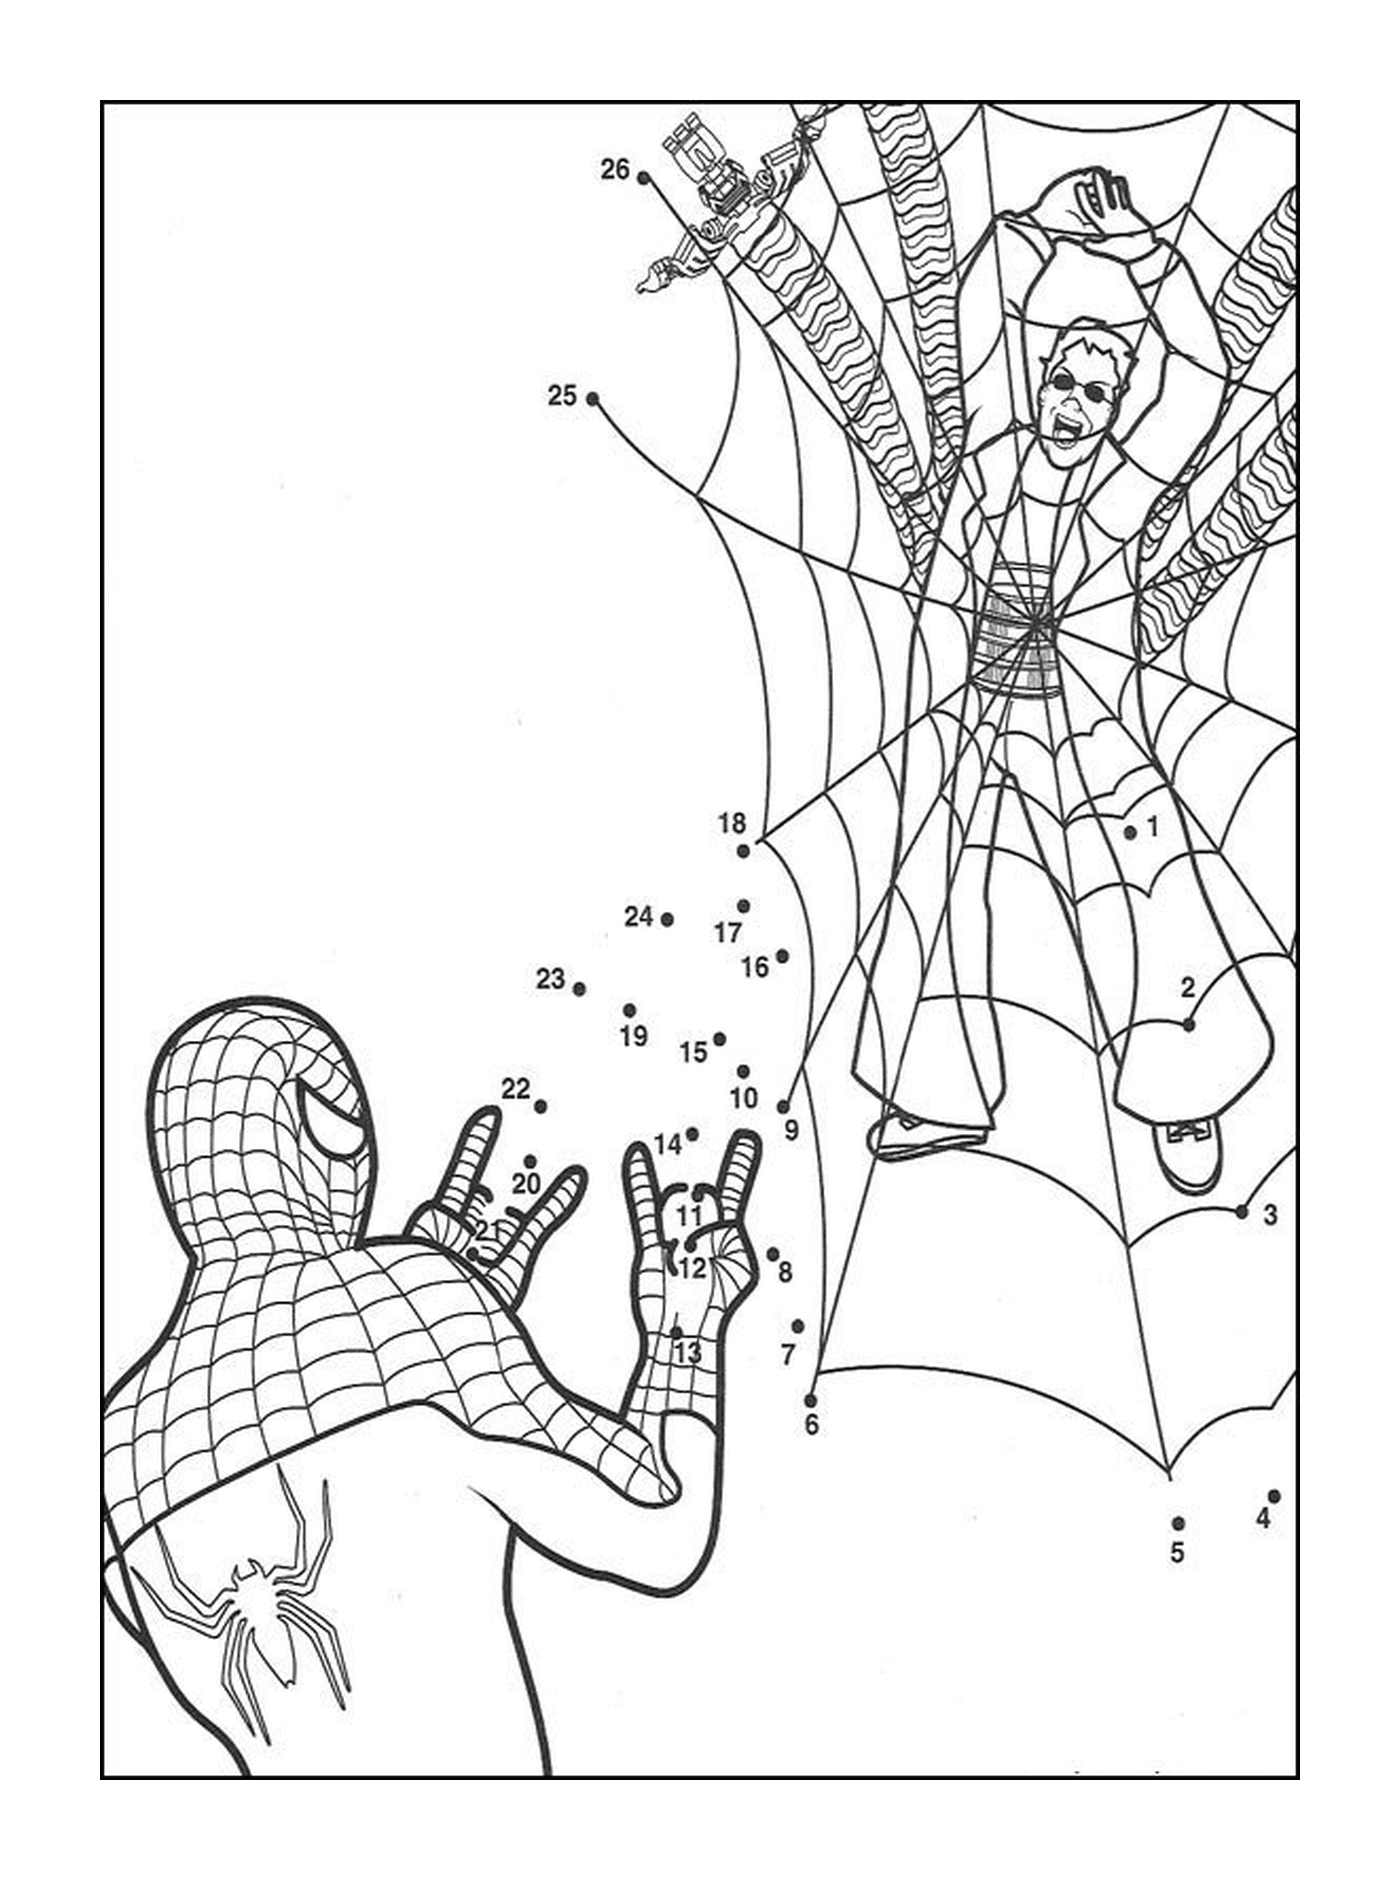  Spider-Man in Punkten zu verbinden 